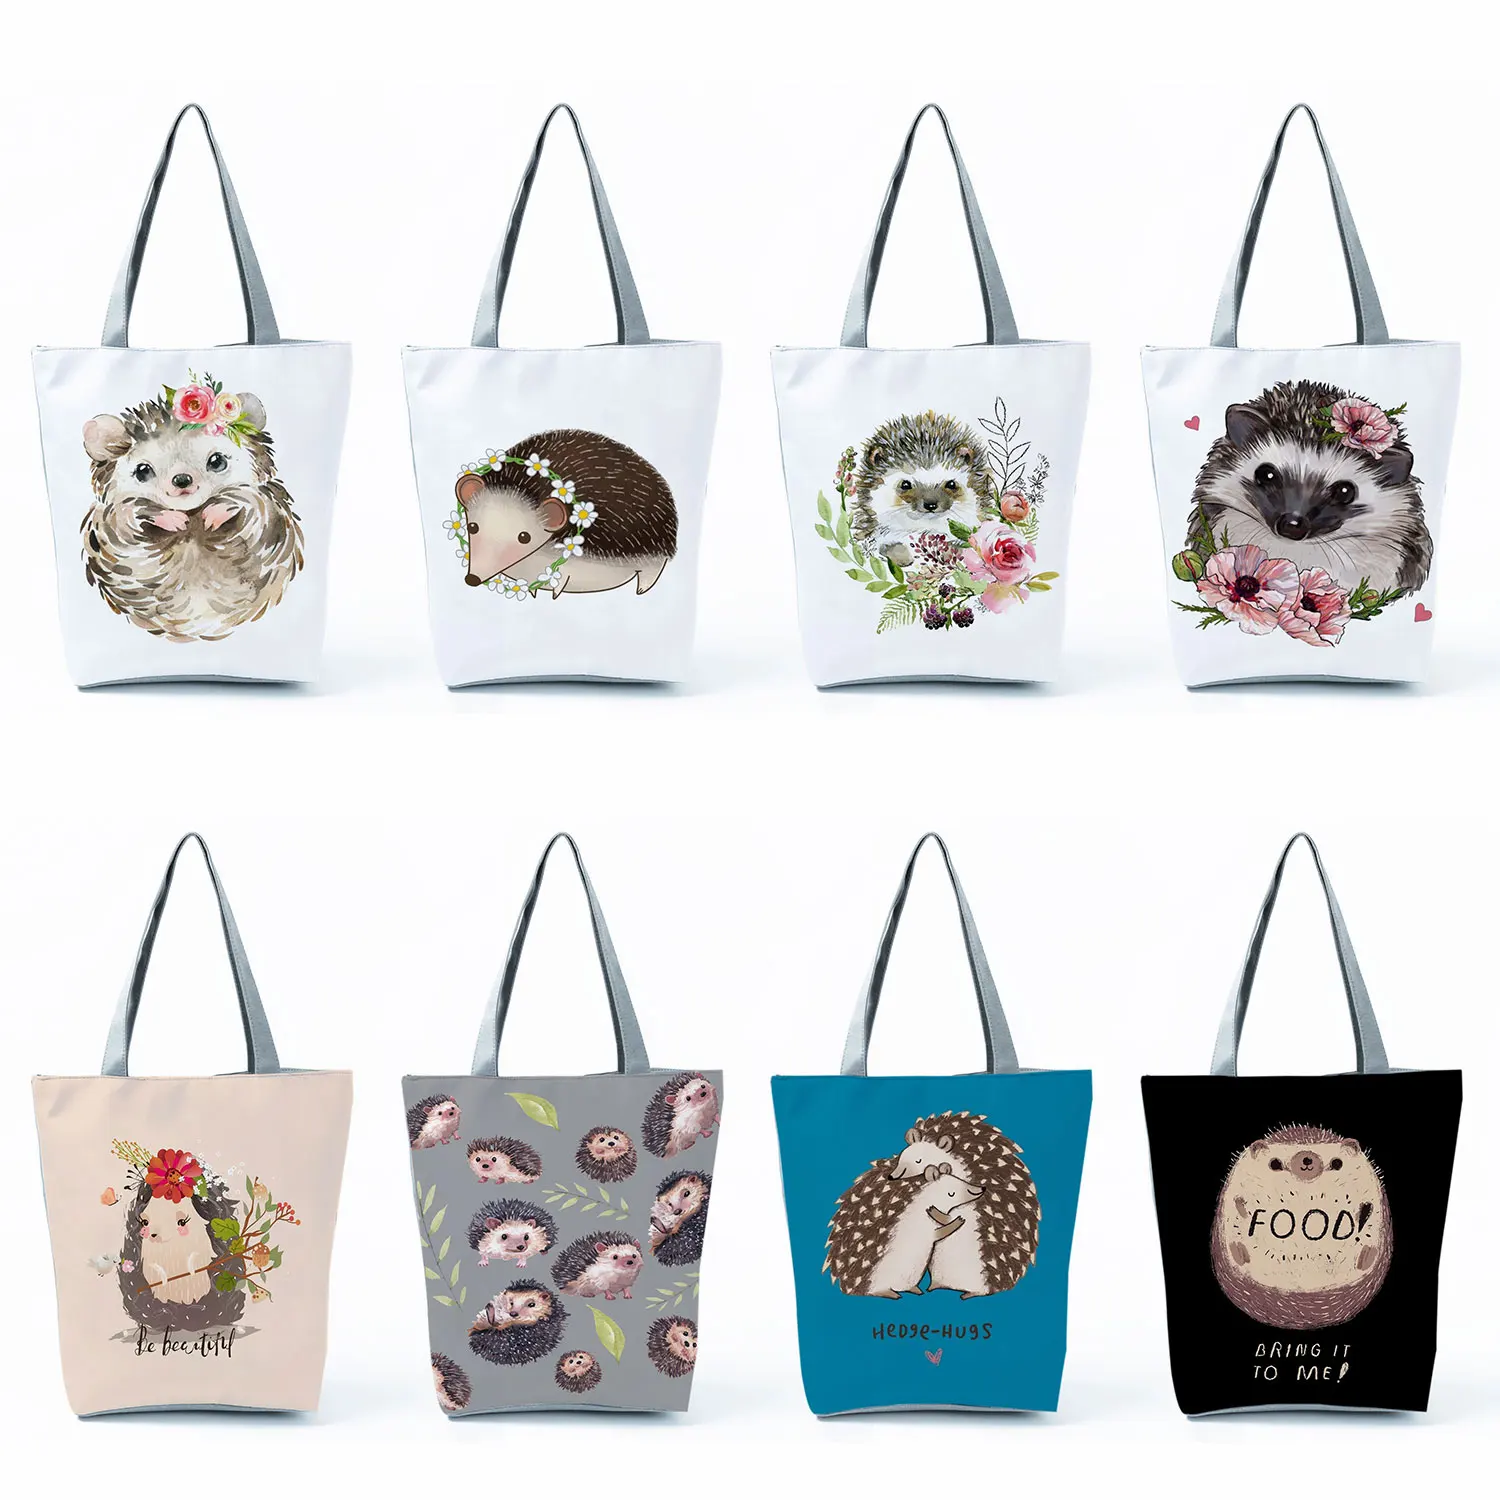 

Женские сумки-тоуты с рисунком ежика и цветов, дизайнерские сумки для покупок с индивидуальным логотипом, экологически чистая многоразовая сумка через плечо с милыми животными